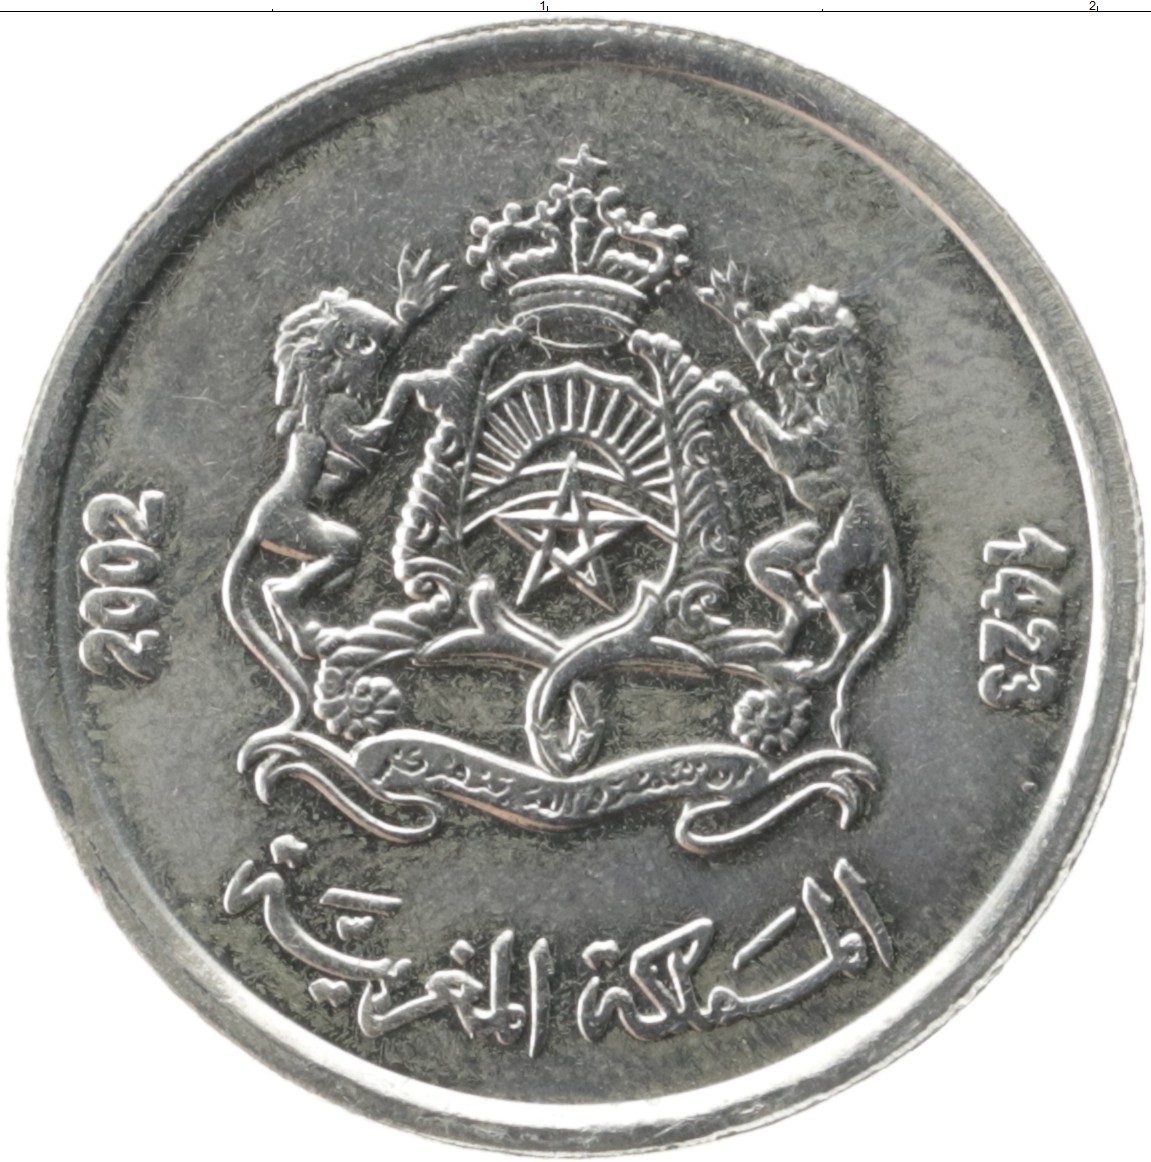 150 000 дирхам. 1/2 Дирхама Марокко. 2 Дирхама монета. Монета Марокко 1/2 дирхама 2002. Три дирхама монета.